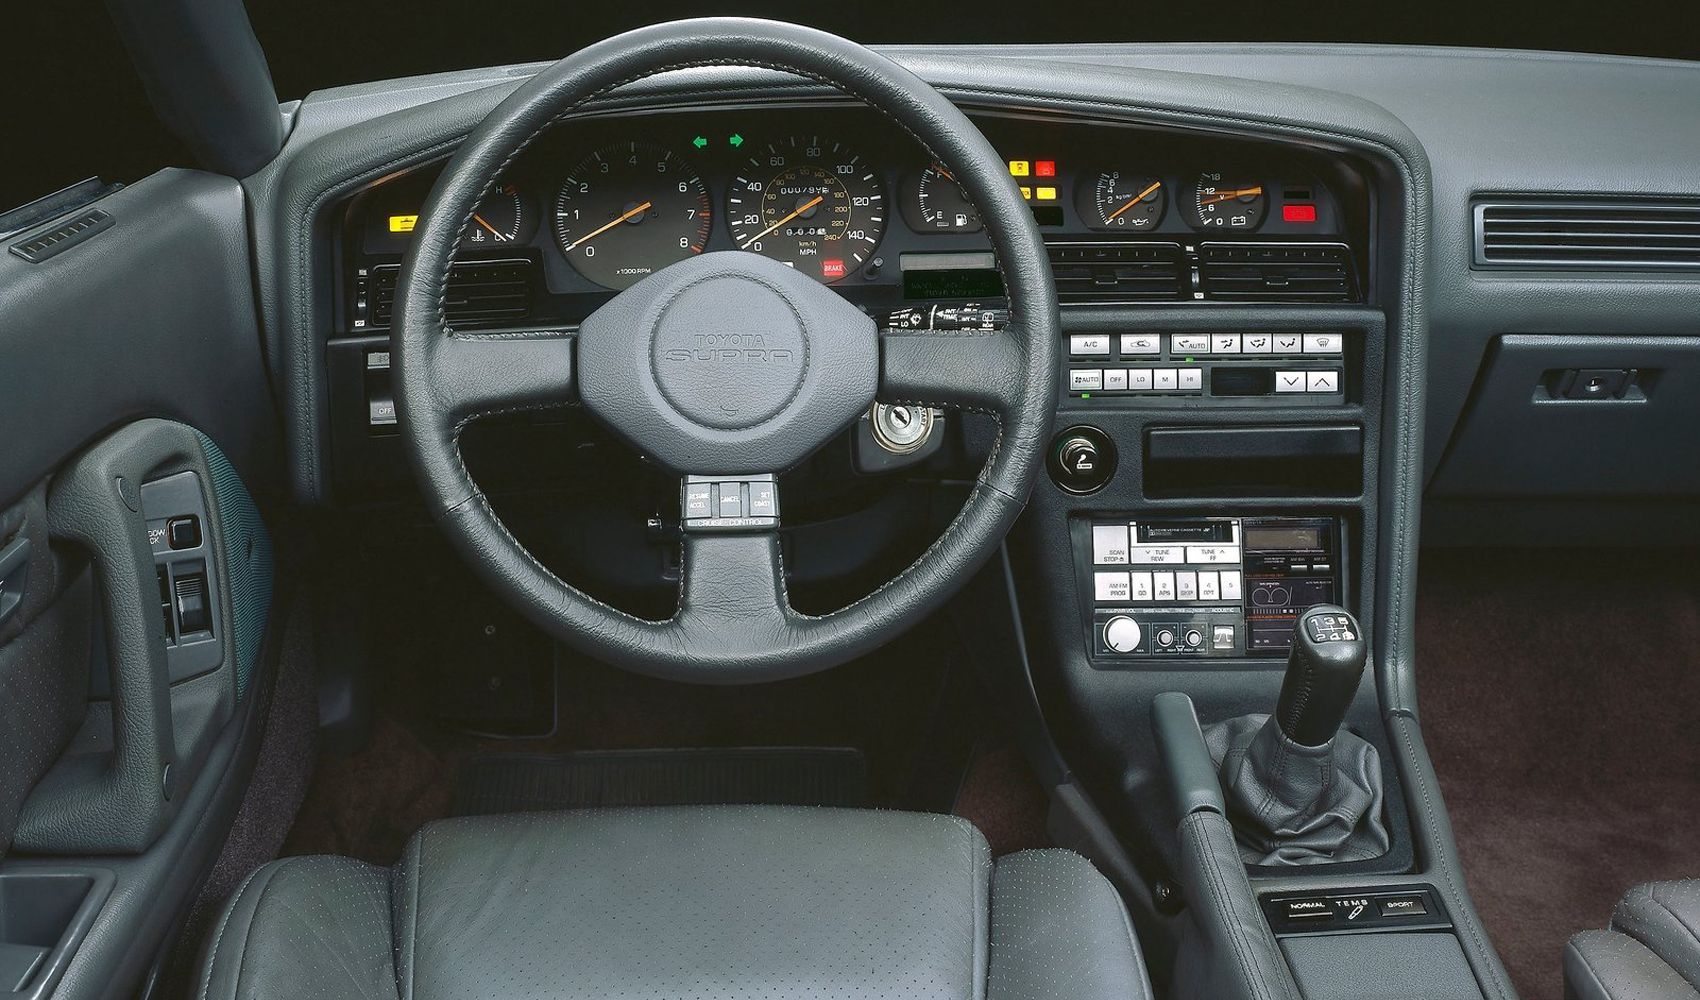 Third-Gen 1987 Toyota A70 Supra Interior View